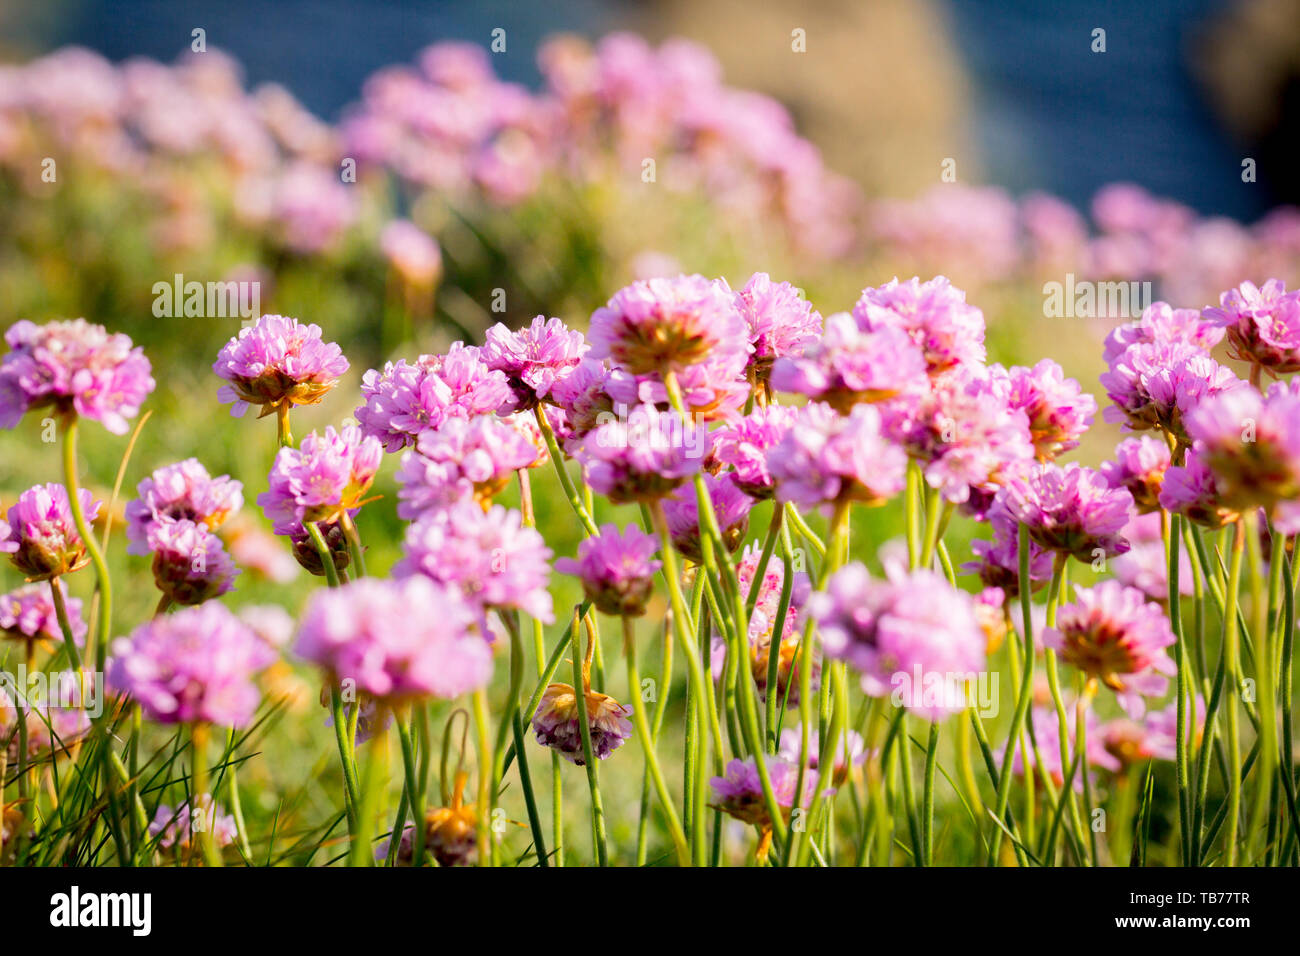 Foto di paesaggio con prato in fiore con fondo marino. Fiori all'aglio. Fiori rosa prato. Foto Stock